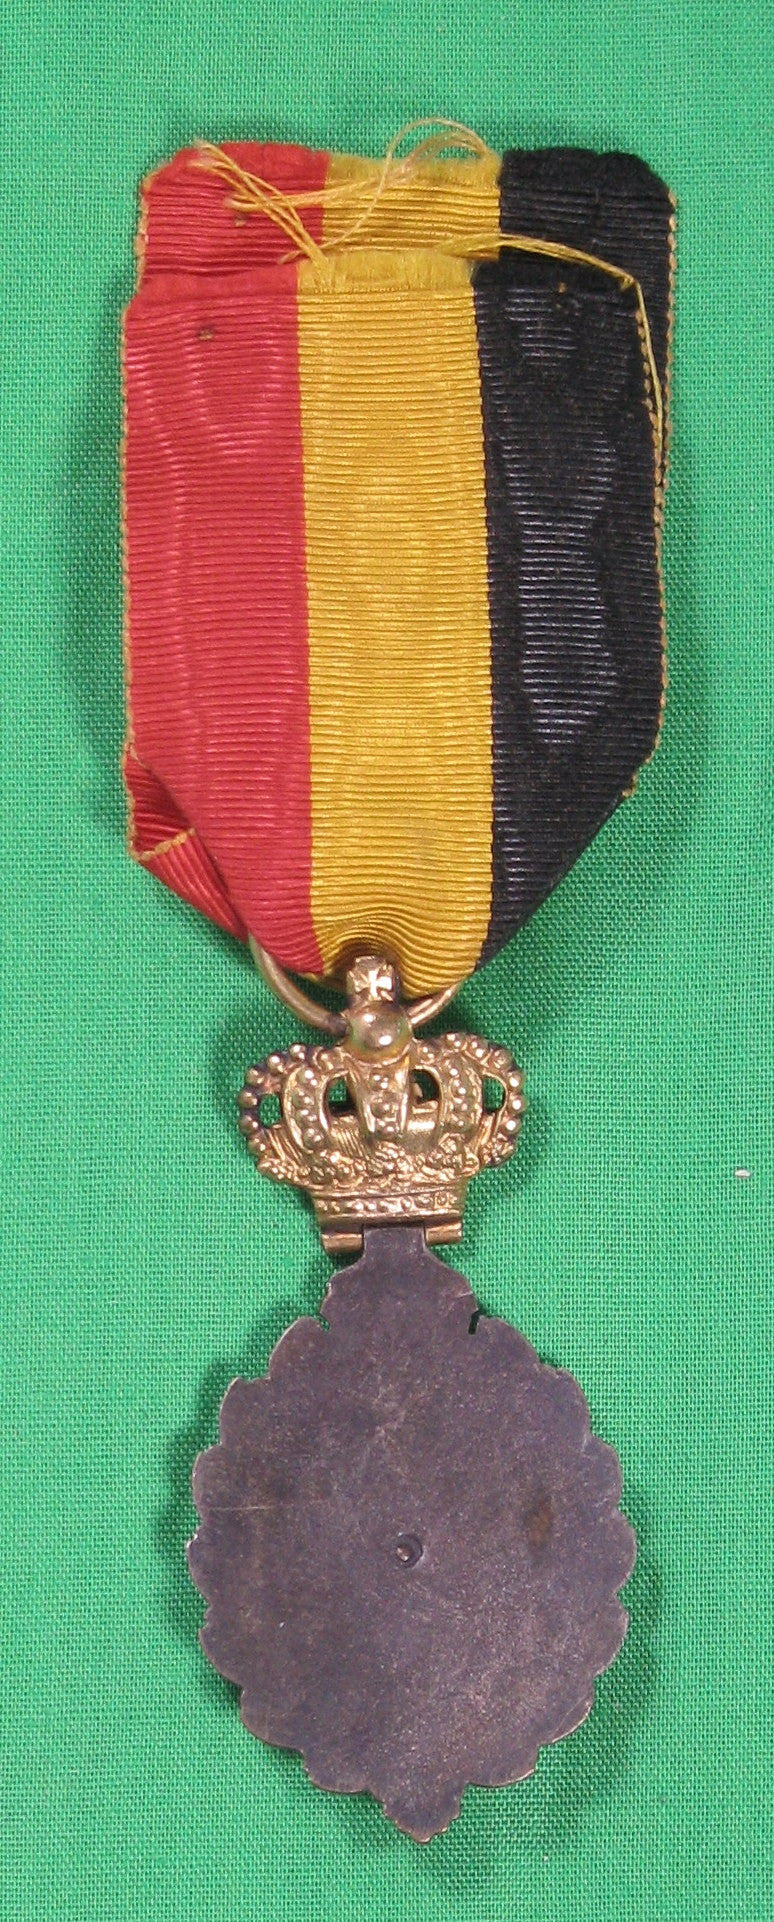 Belgium medal - Labour Decoration / Belgique médaille -  Décoration du Travail